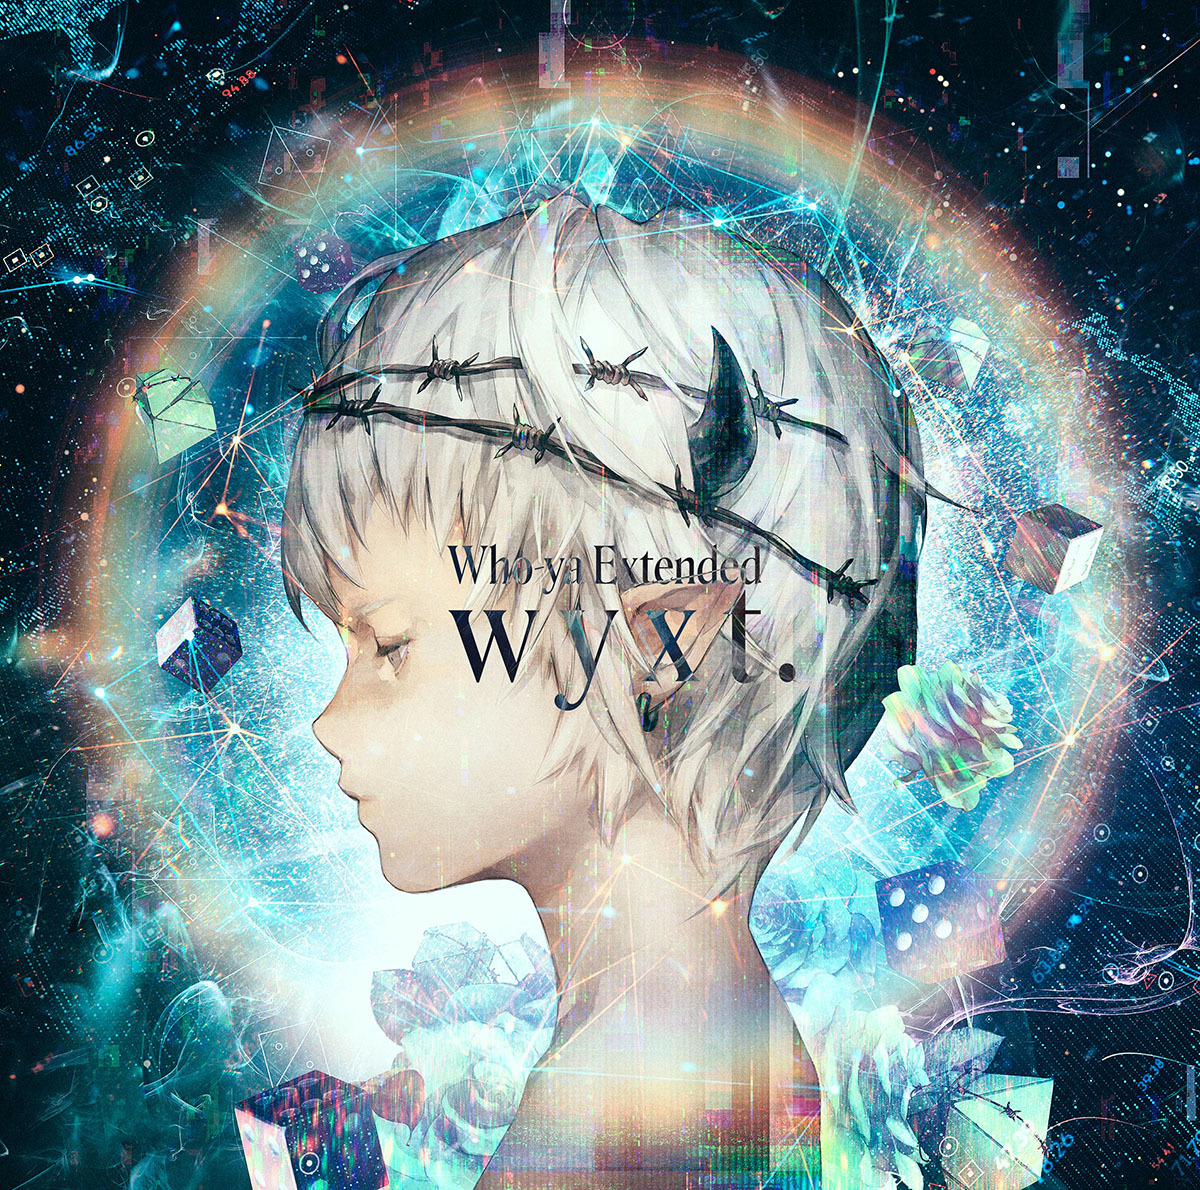 Who-ya Extended 1st full Album 『wyxt.』ジャケ写